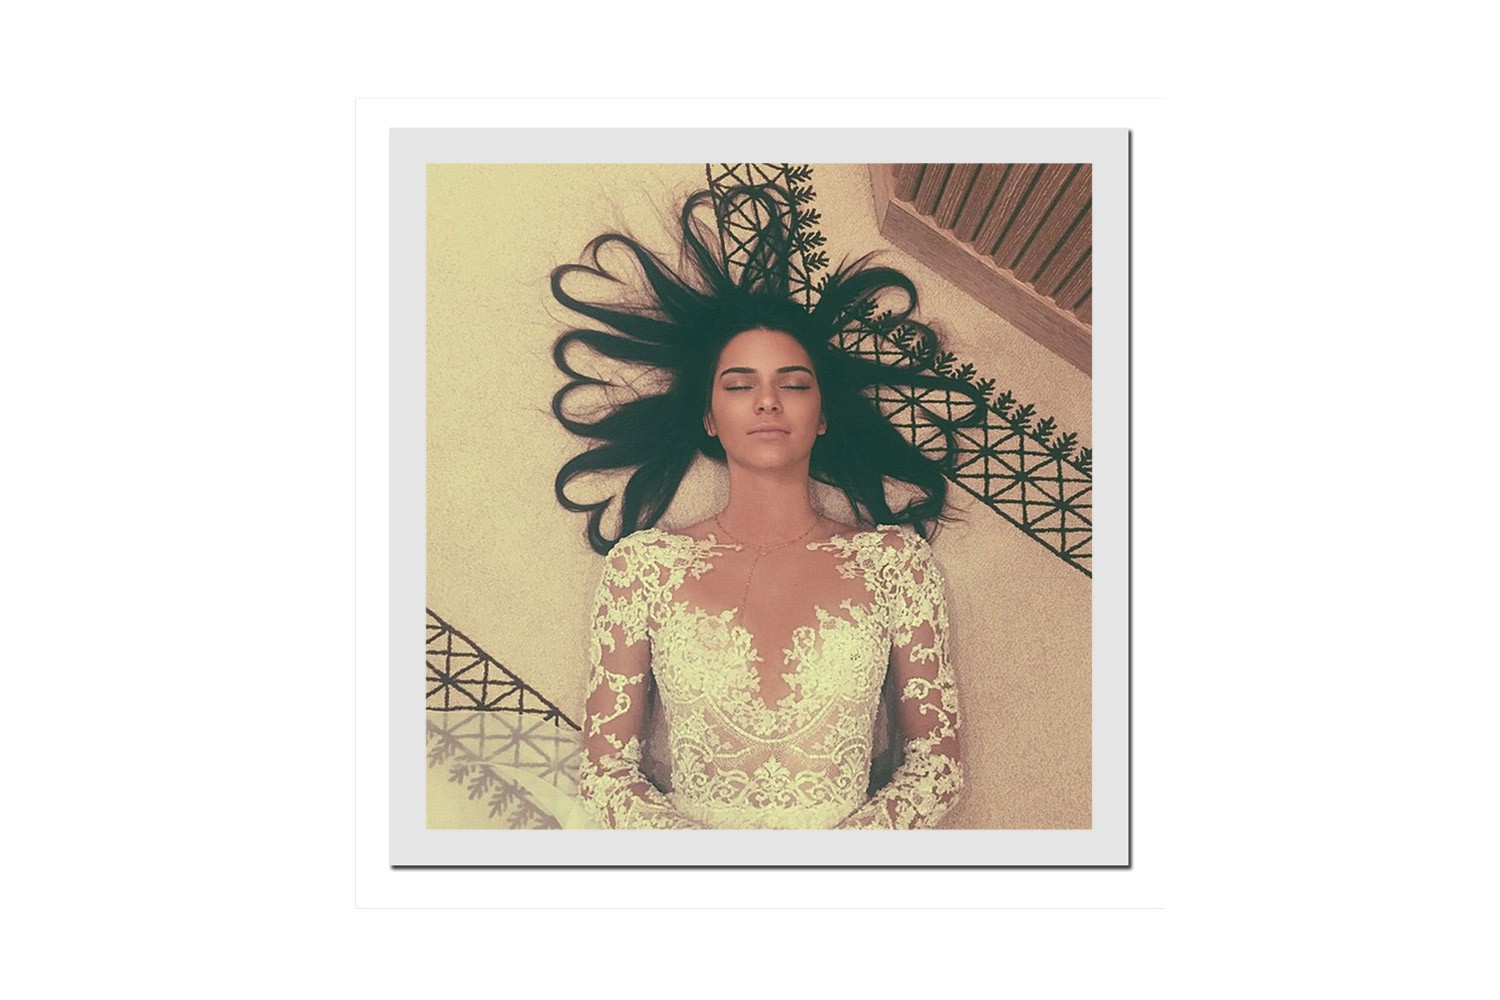 A foto recorde de Kendall Jenner (Foto: Reprodução/Instagram)